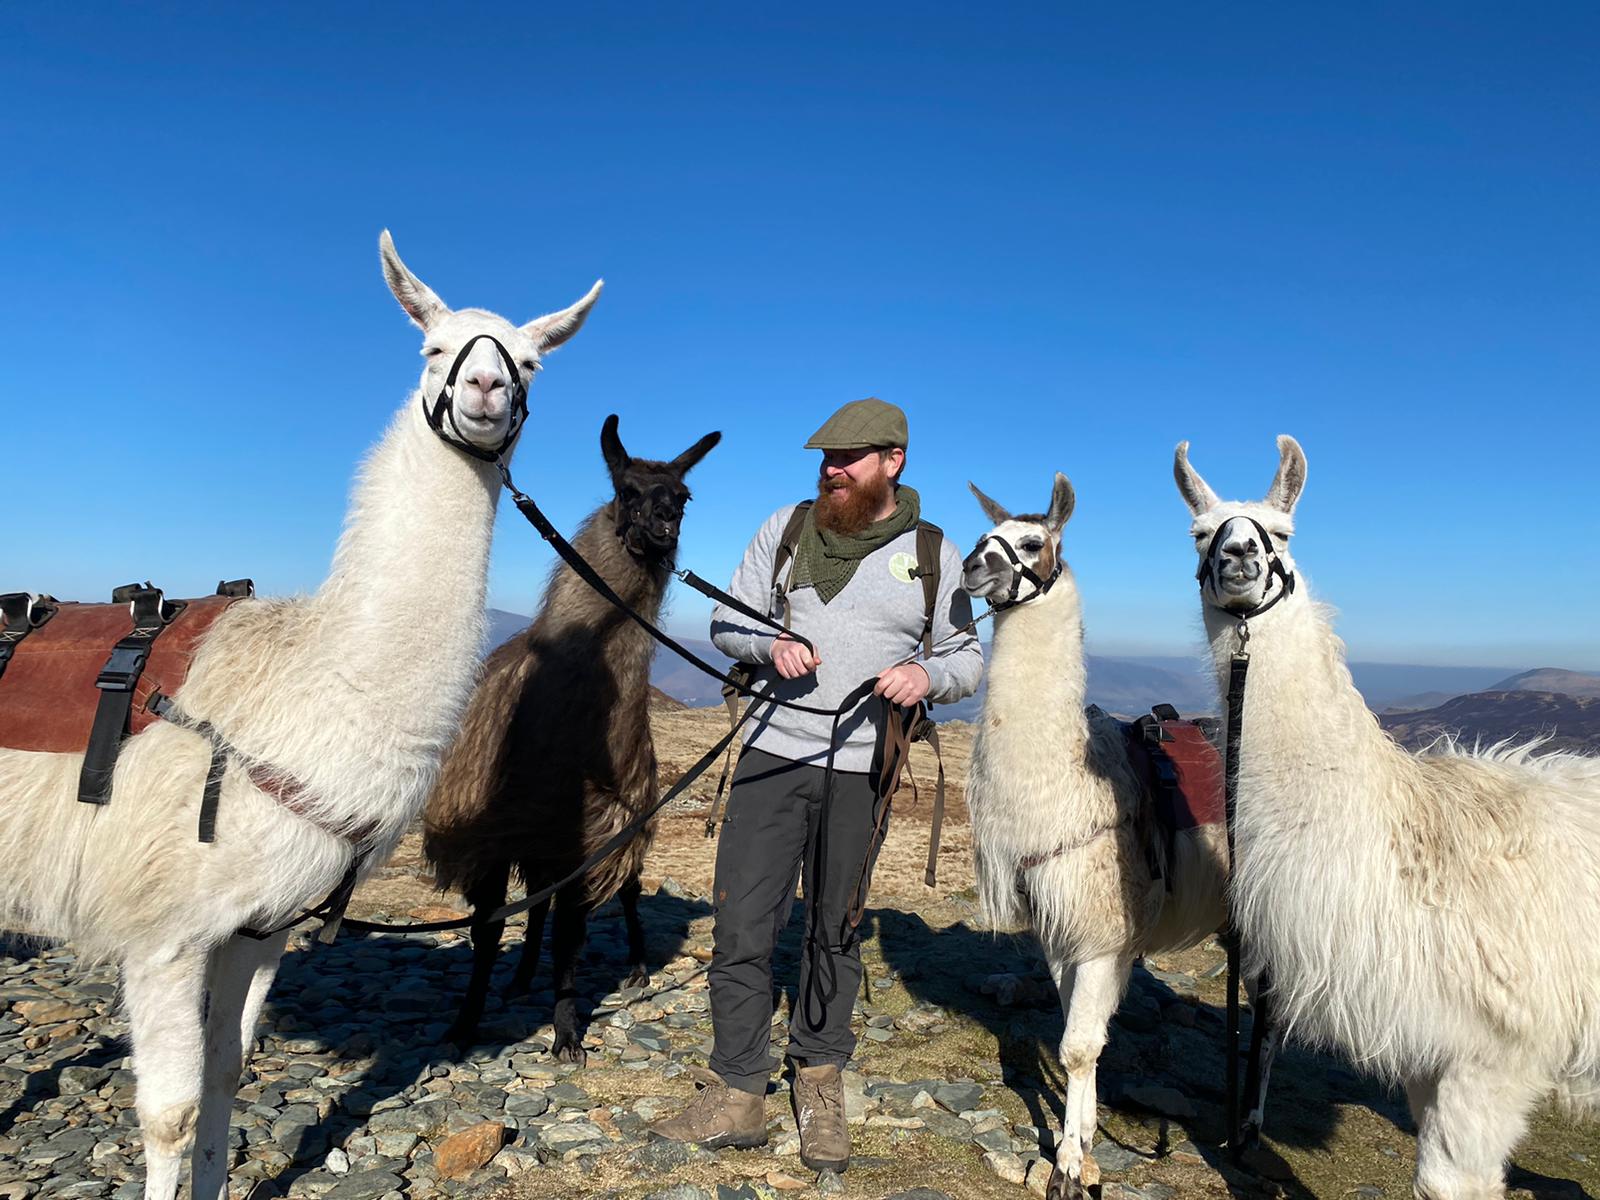 llama trekking trip listening